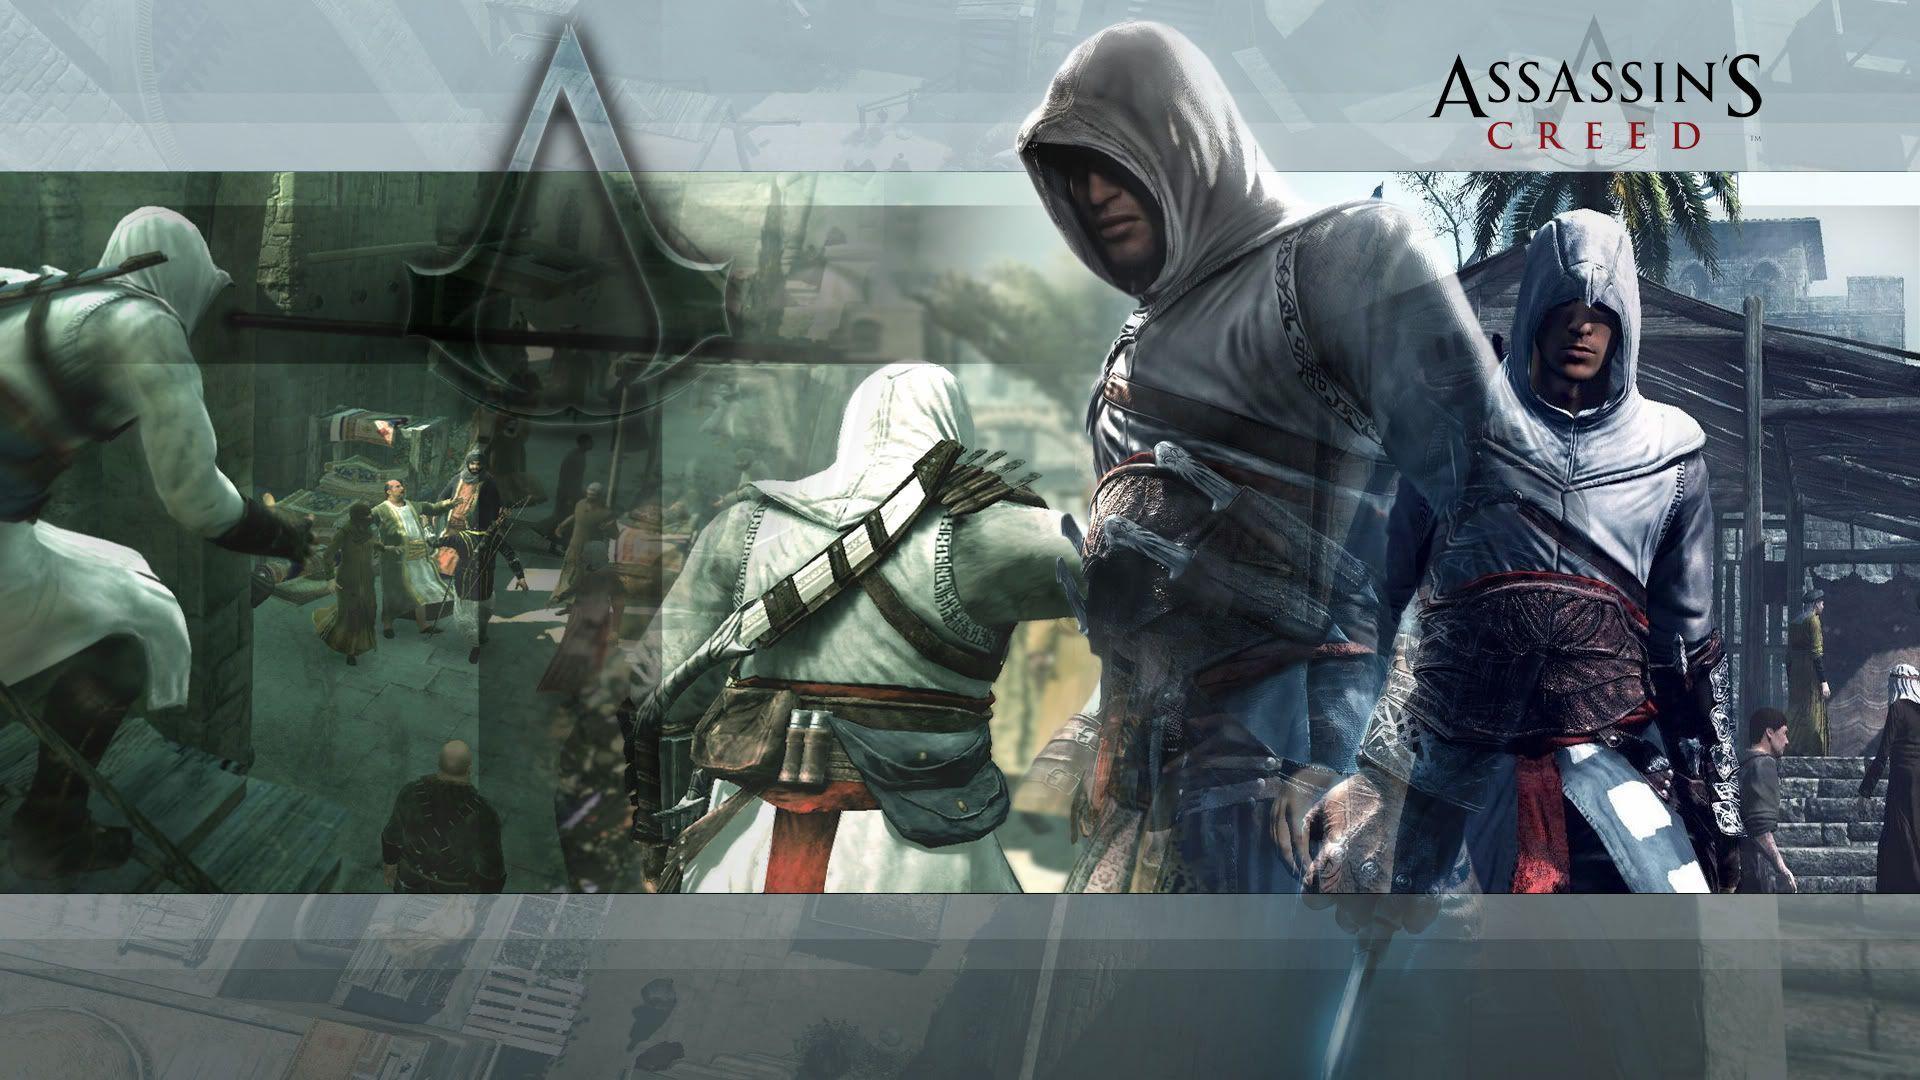 Assassin&;s Creed Free Running wallpaper